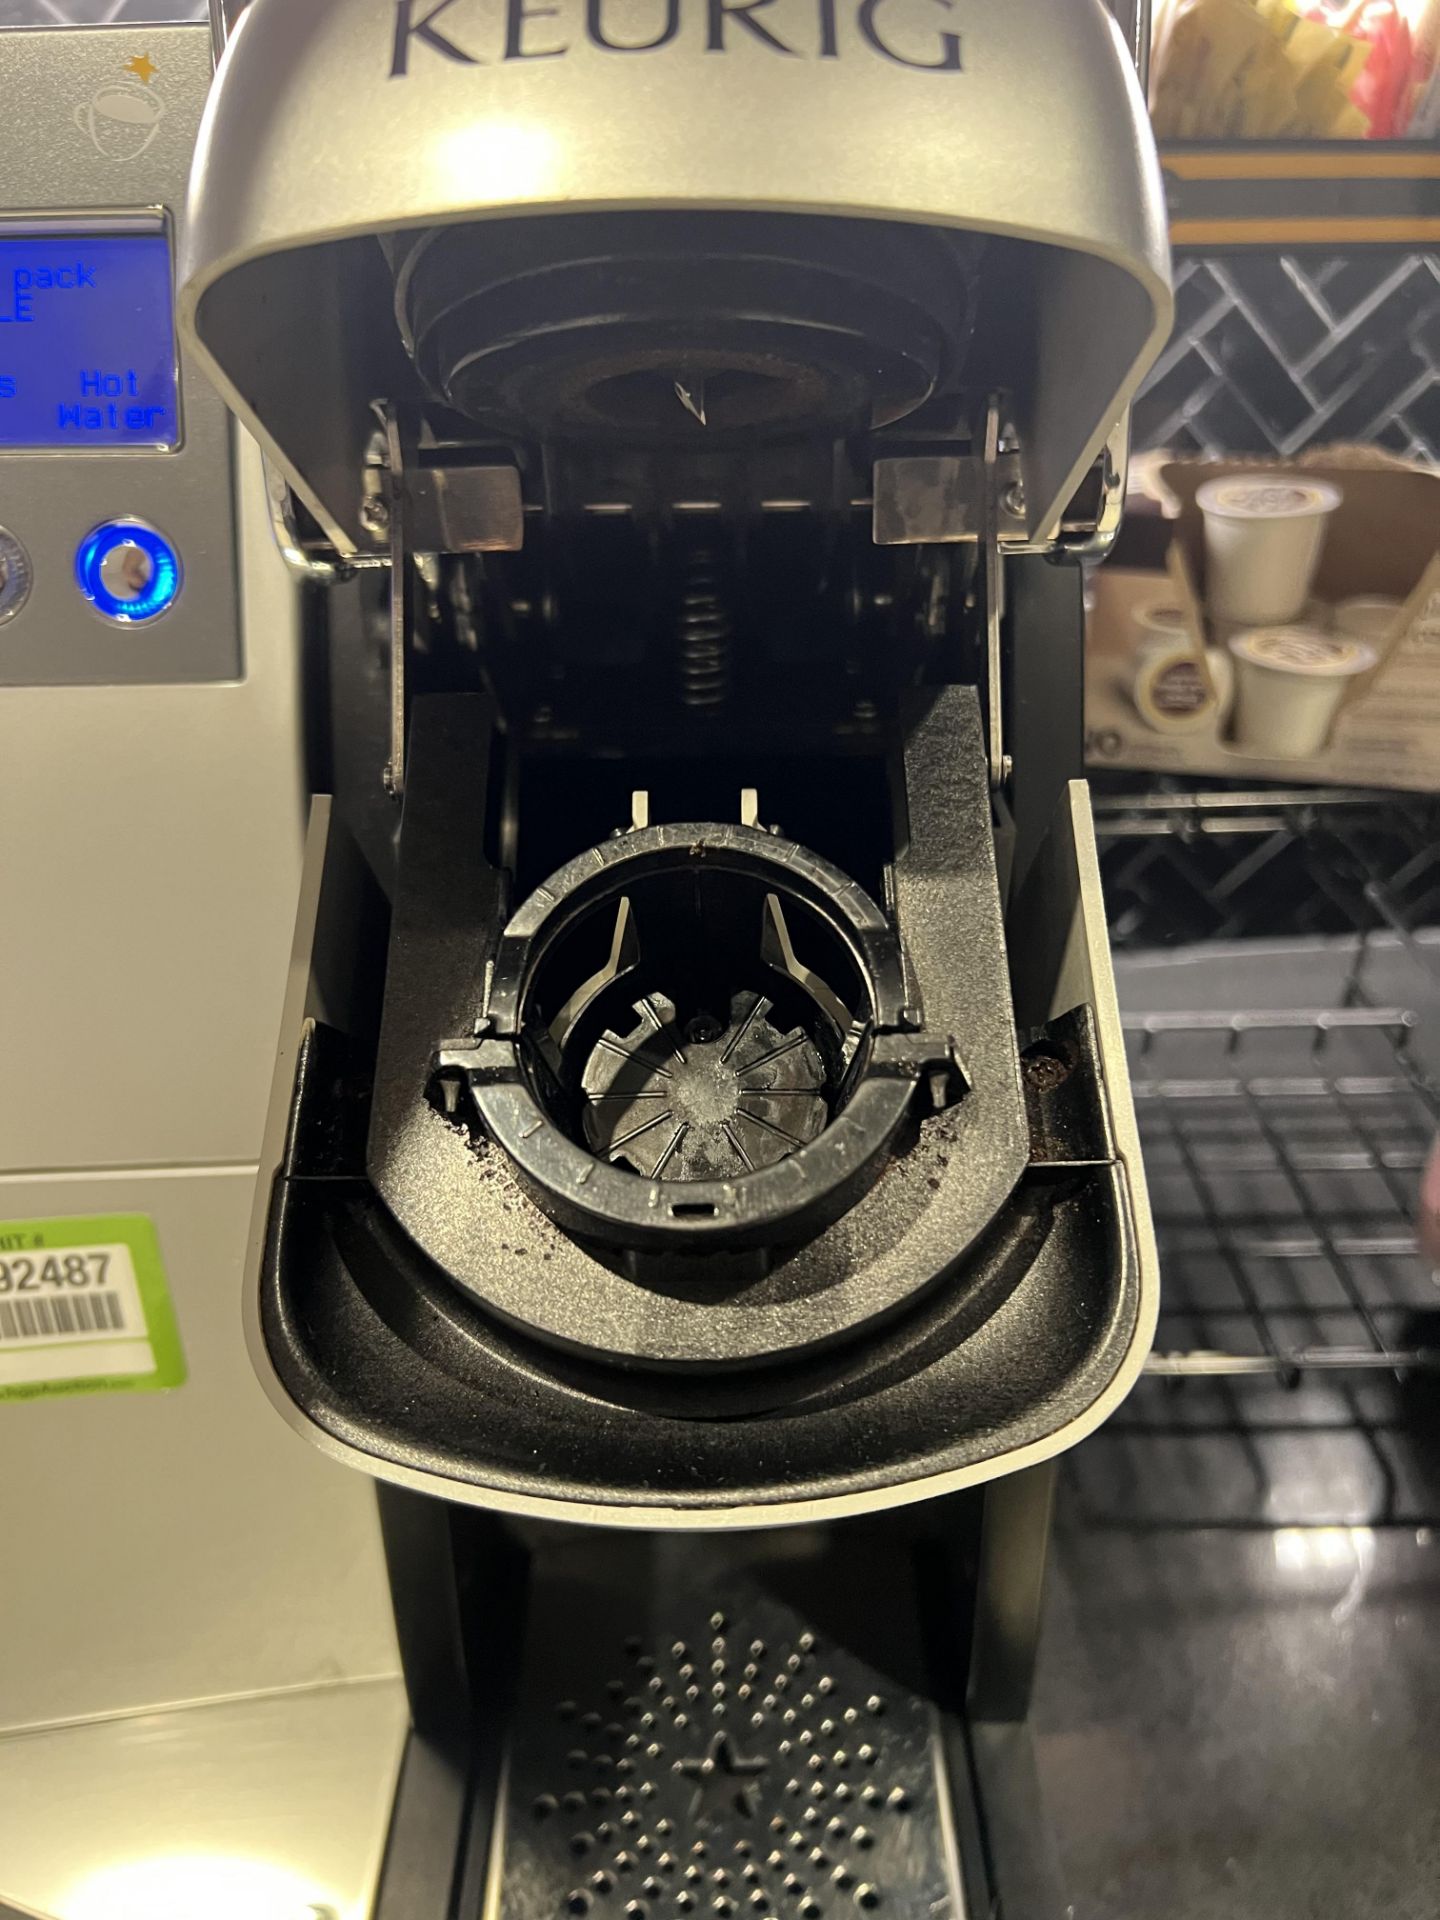 Keurig Coffee Machine - Image 2 of 3